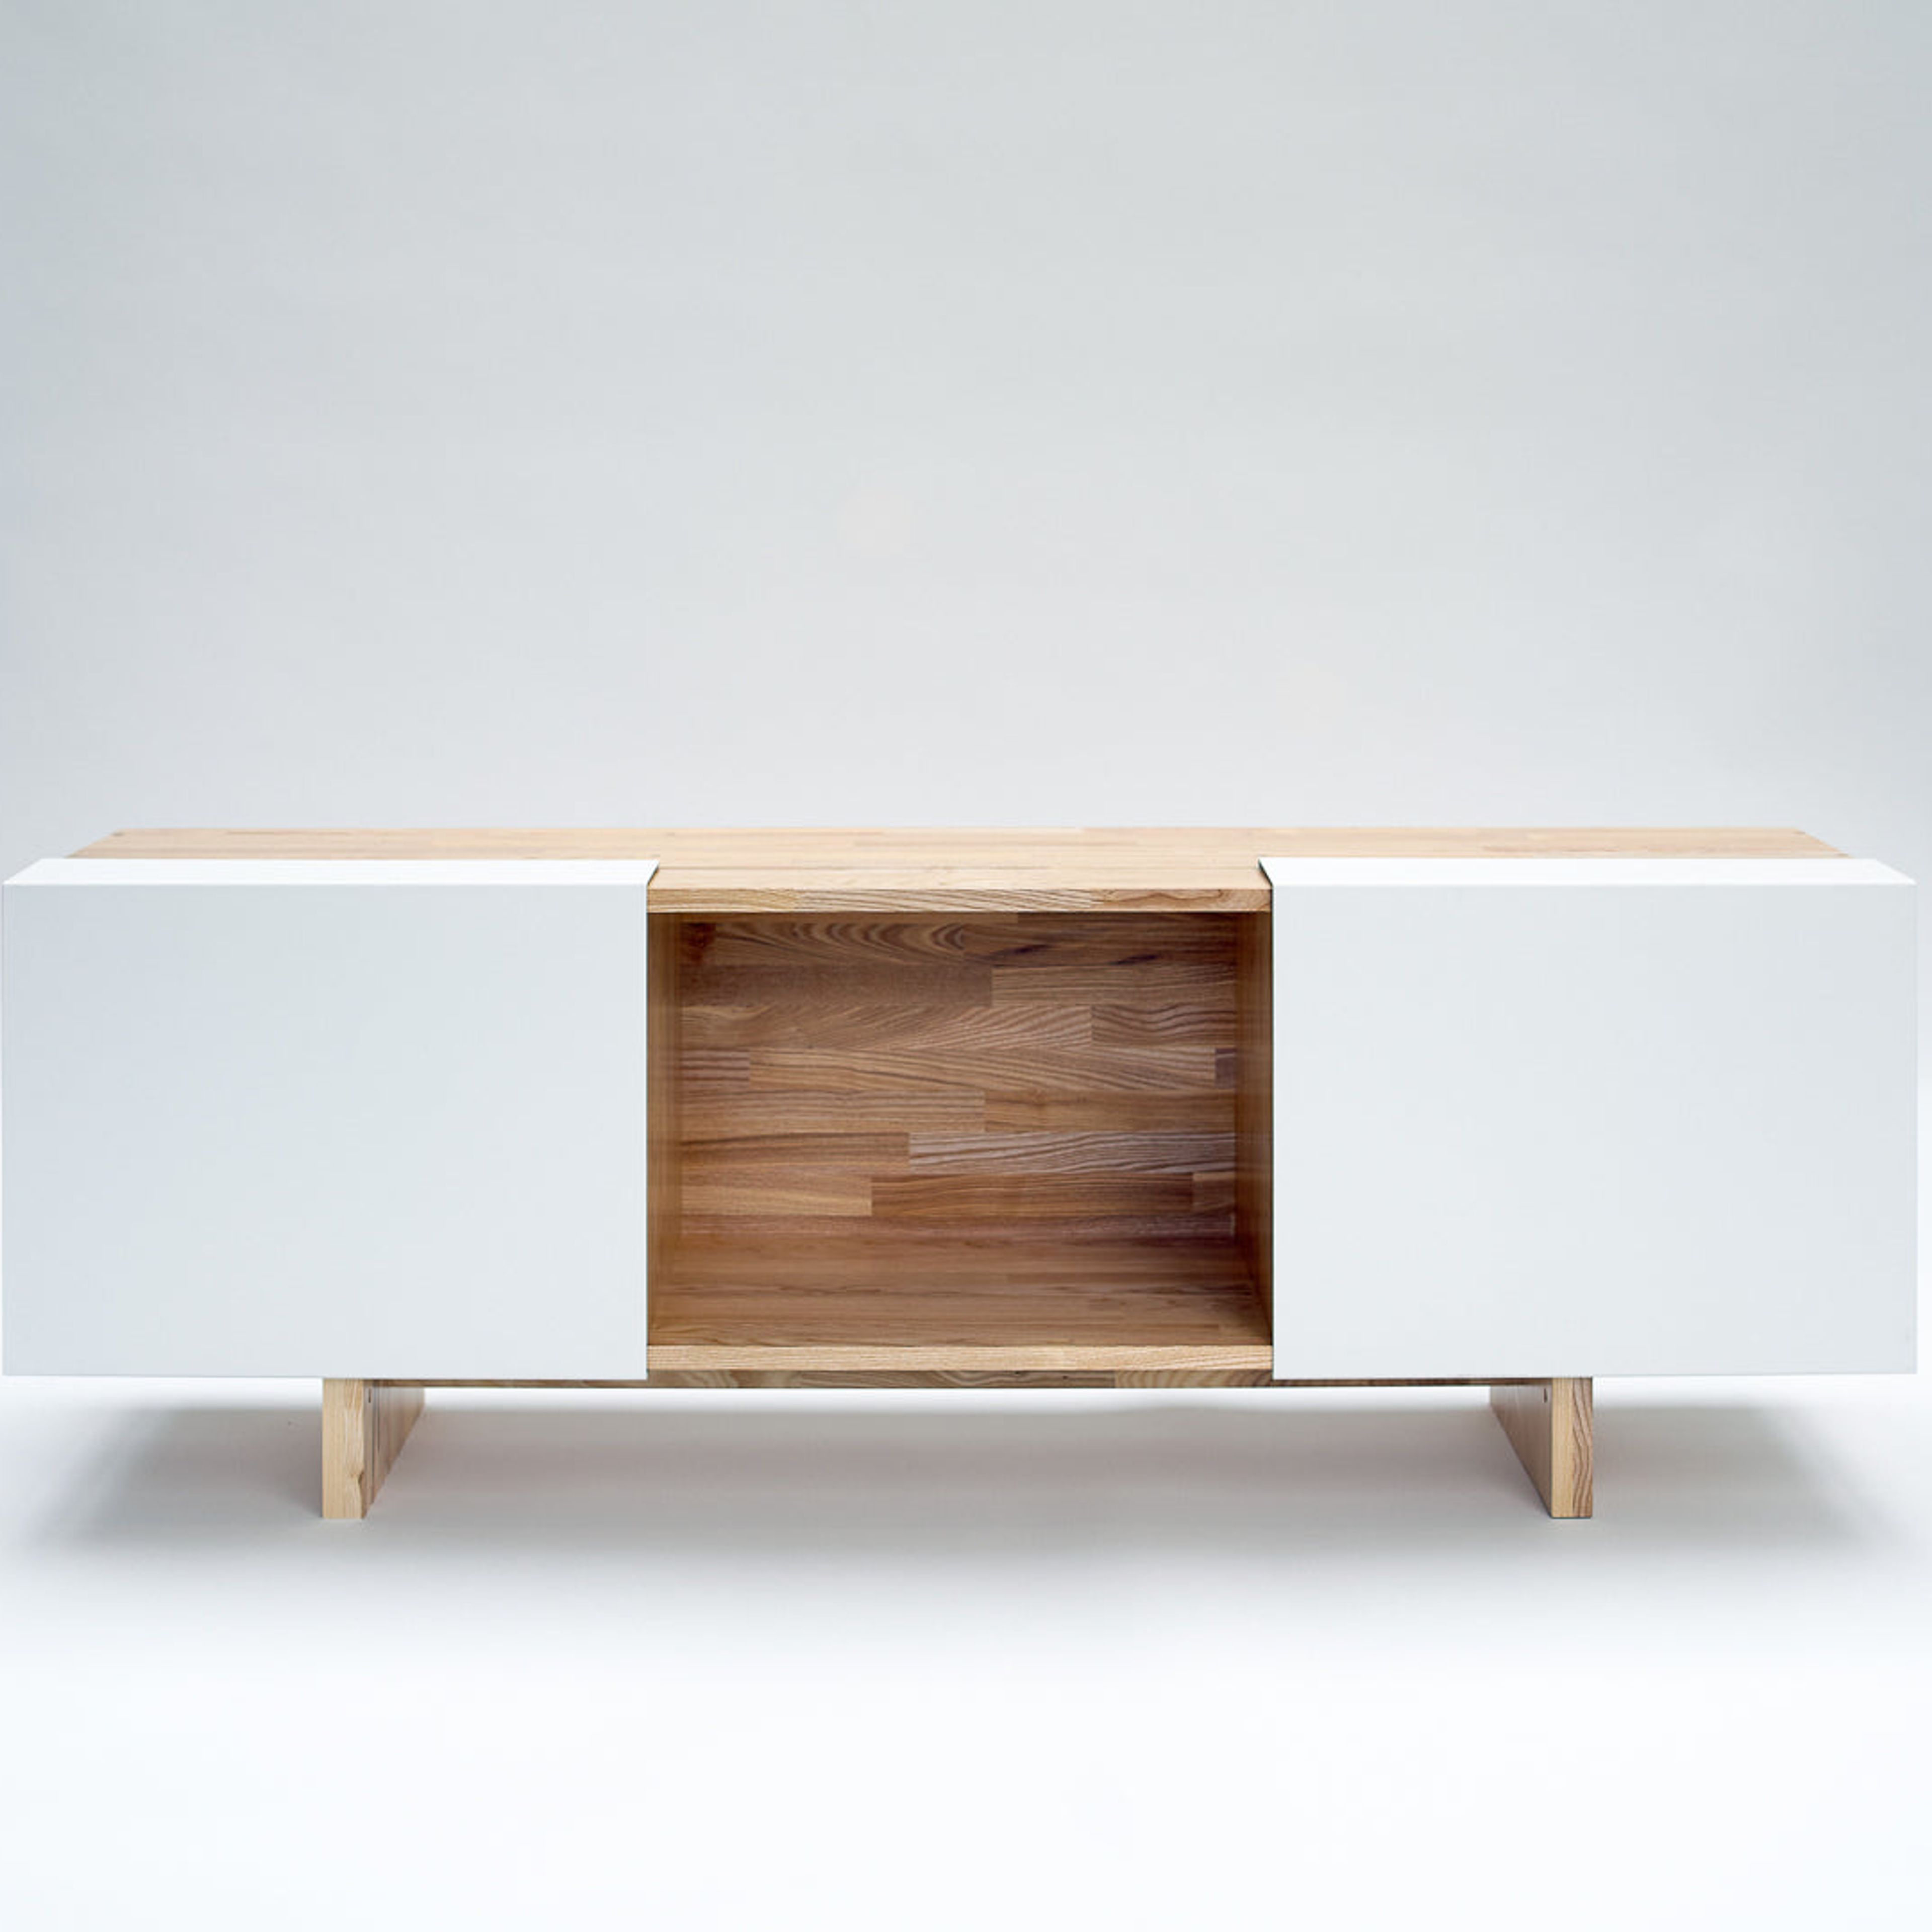 3X Shelf with Base- Ash, White Panels